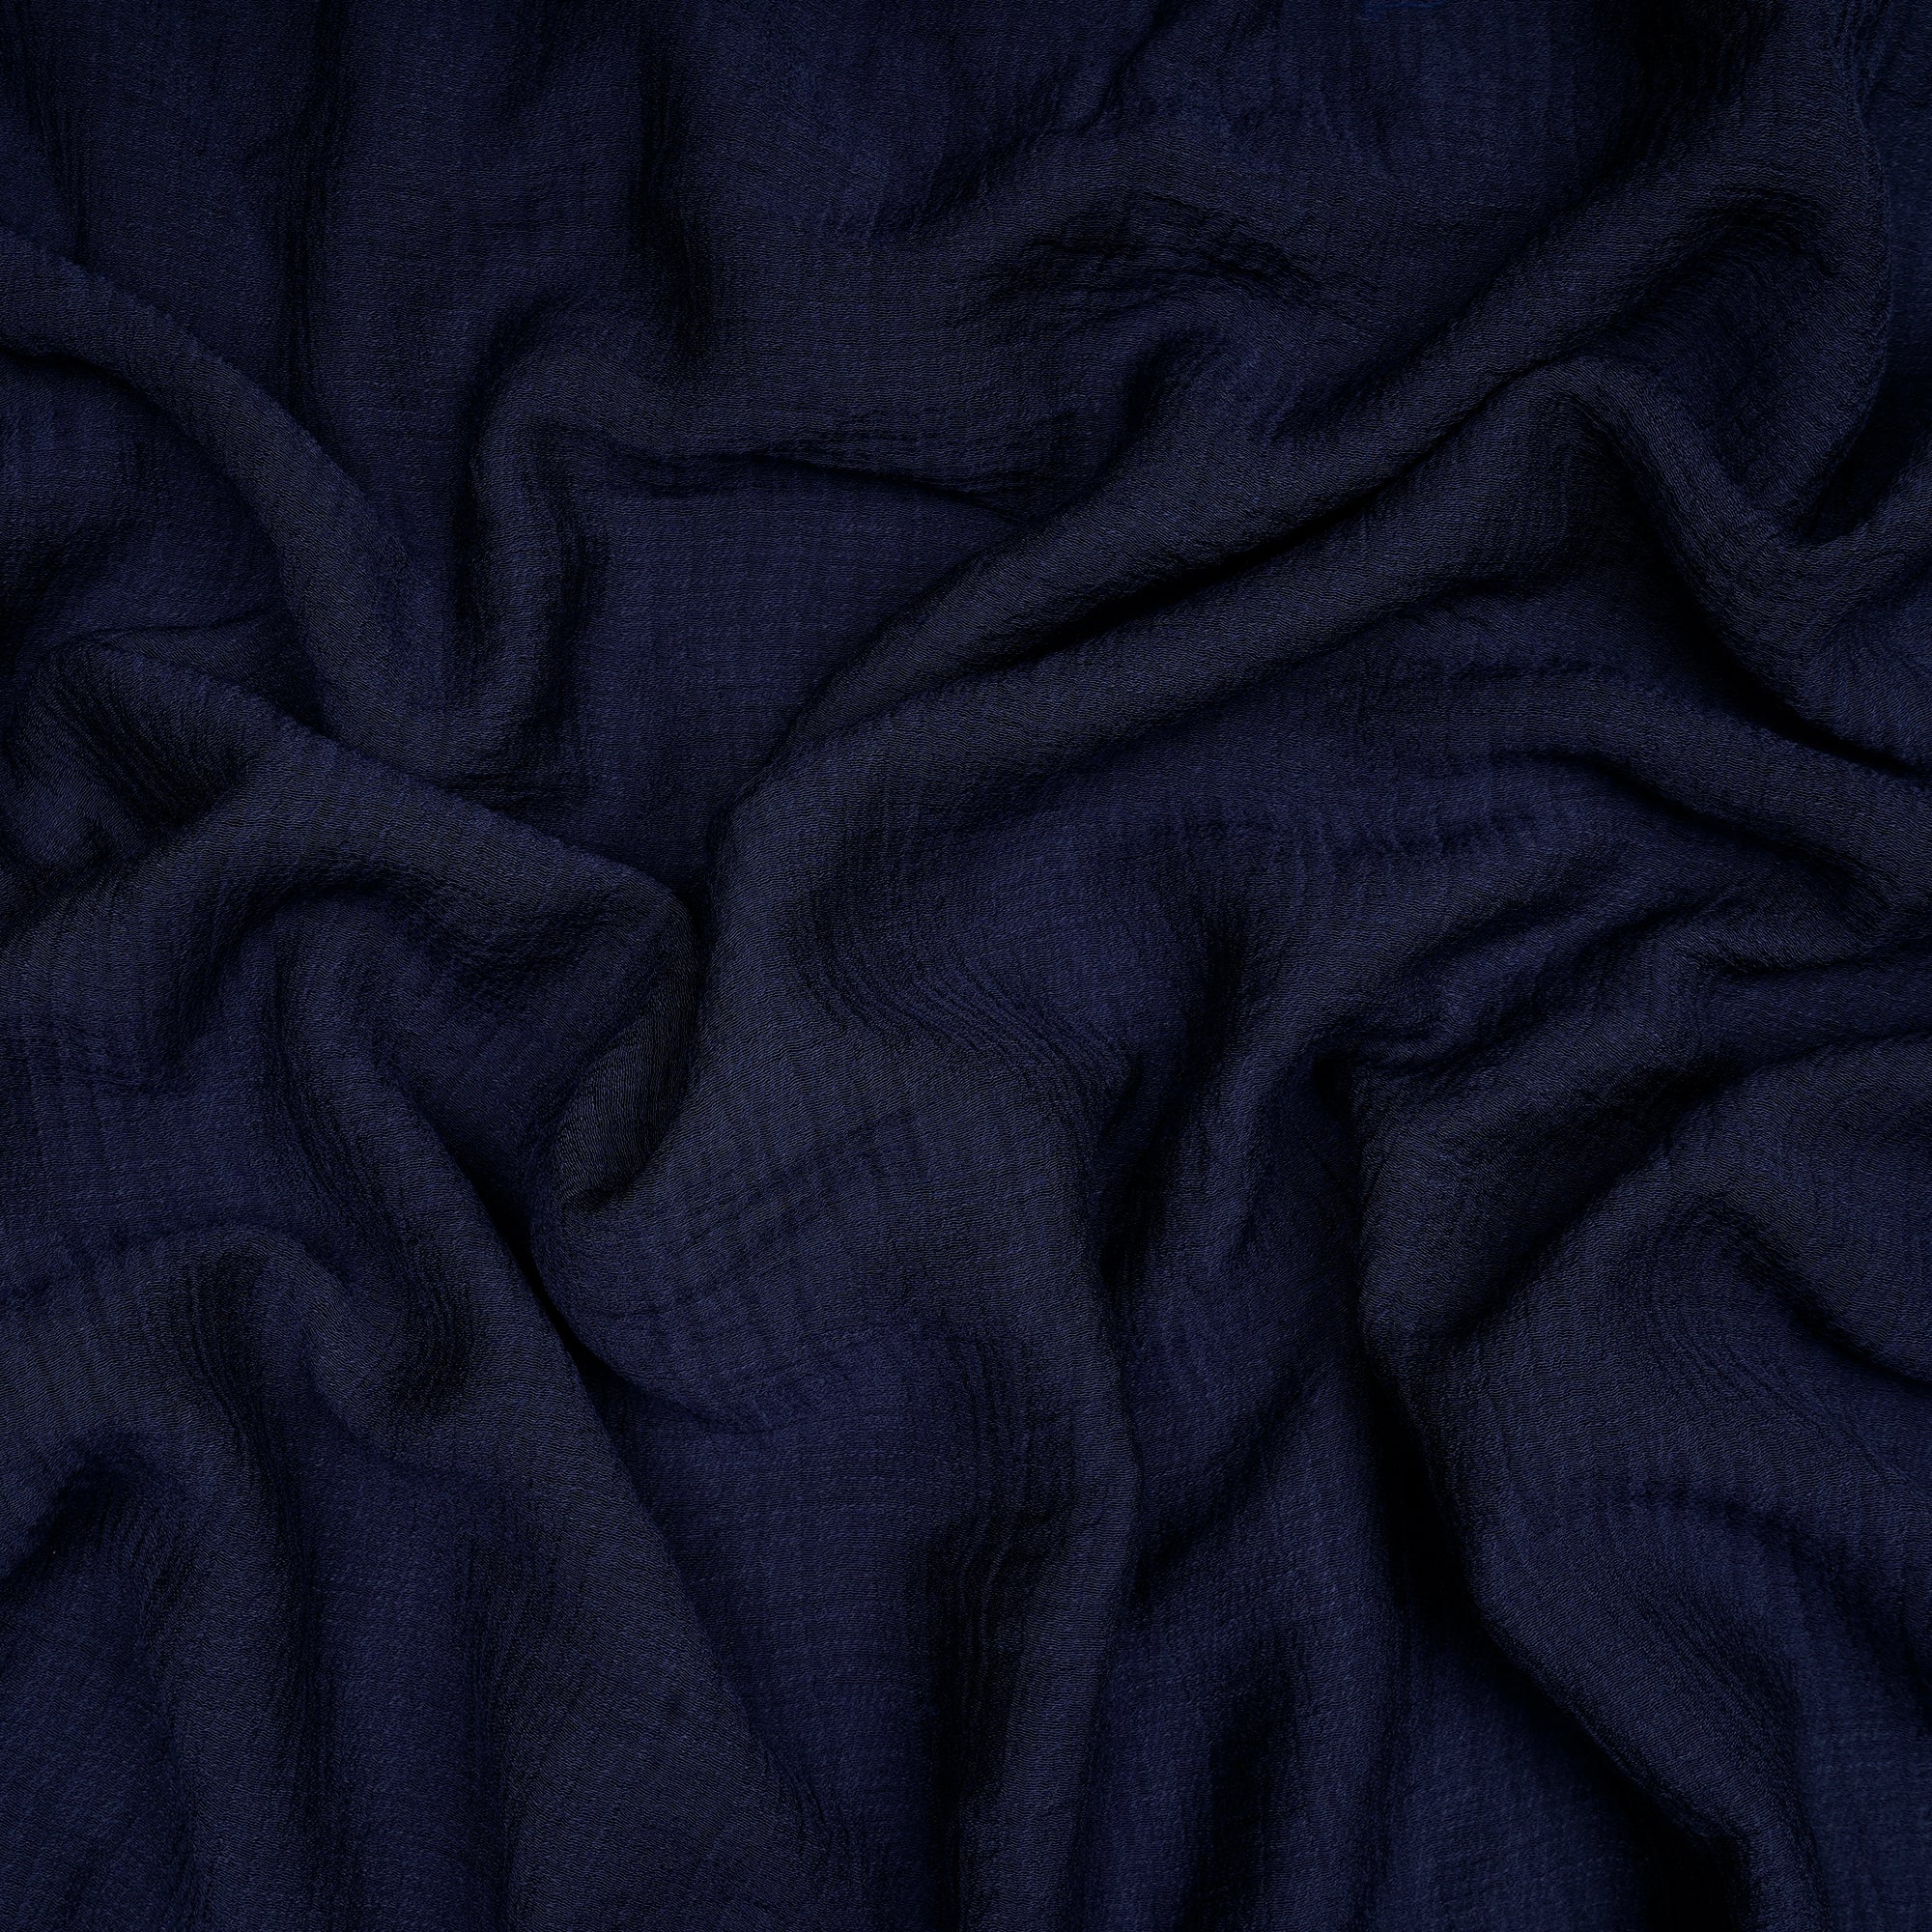 Dark Blue Color Viscose Nylon Fabric